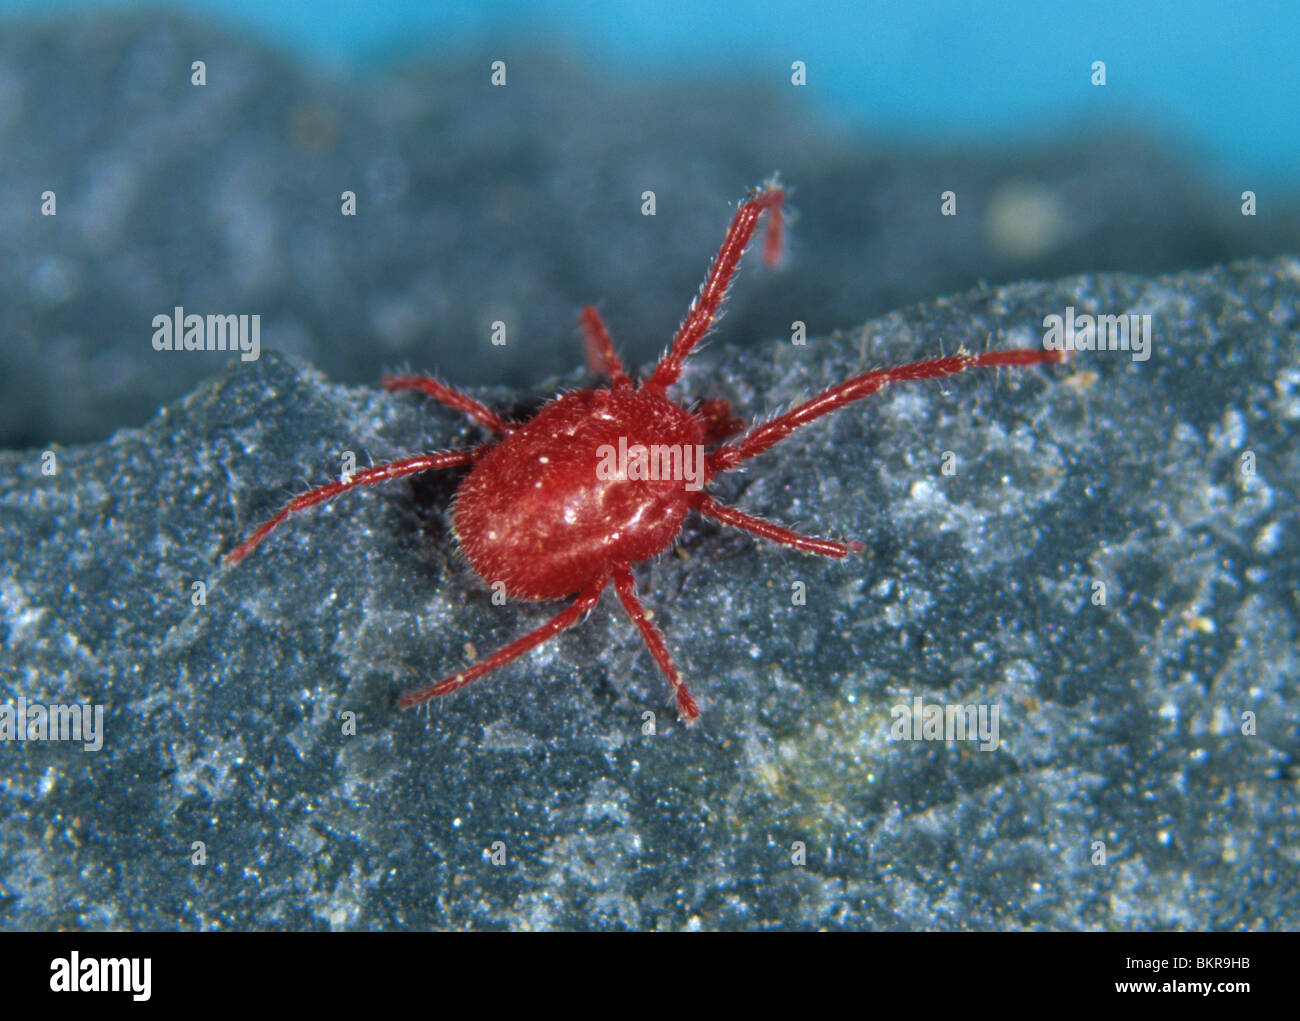 Adult red velvet mite (Allotrombidium fuliginosum) Stock Photo